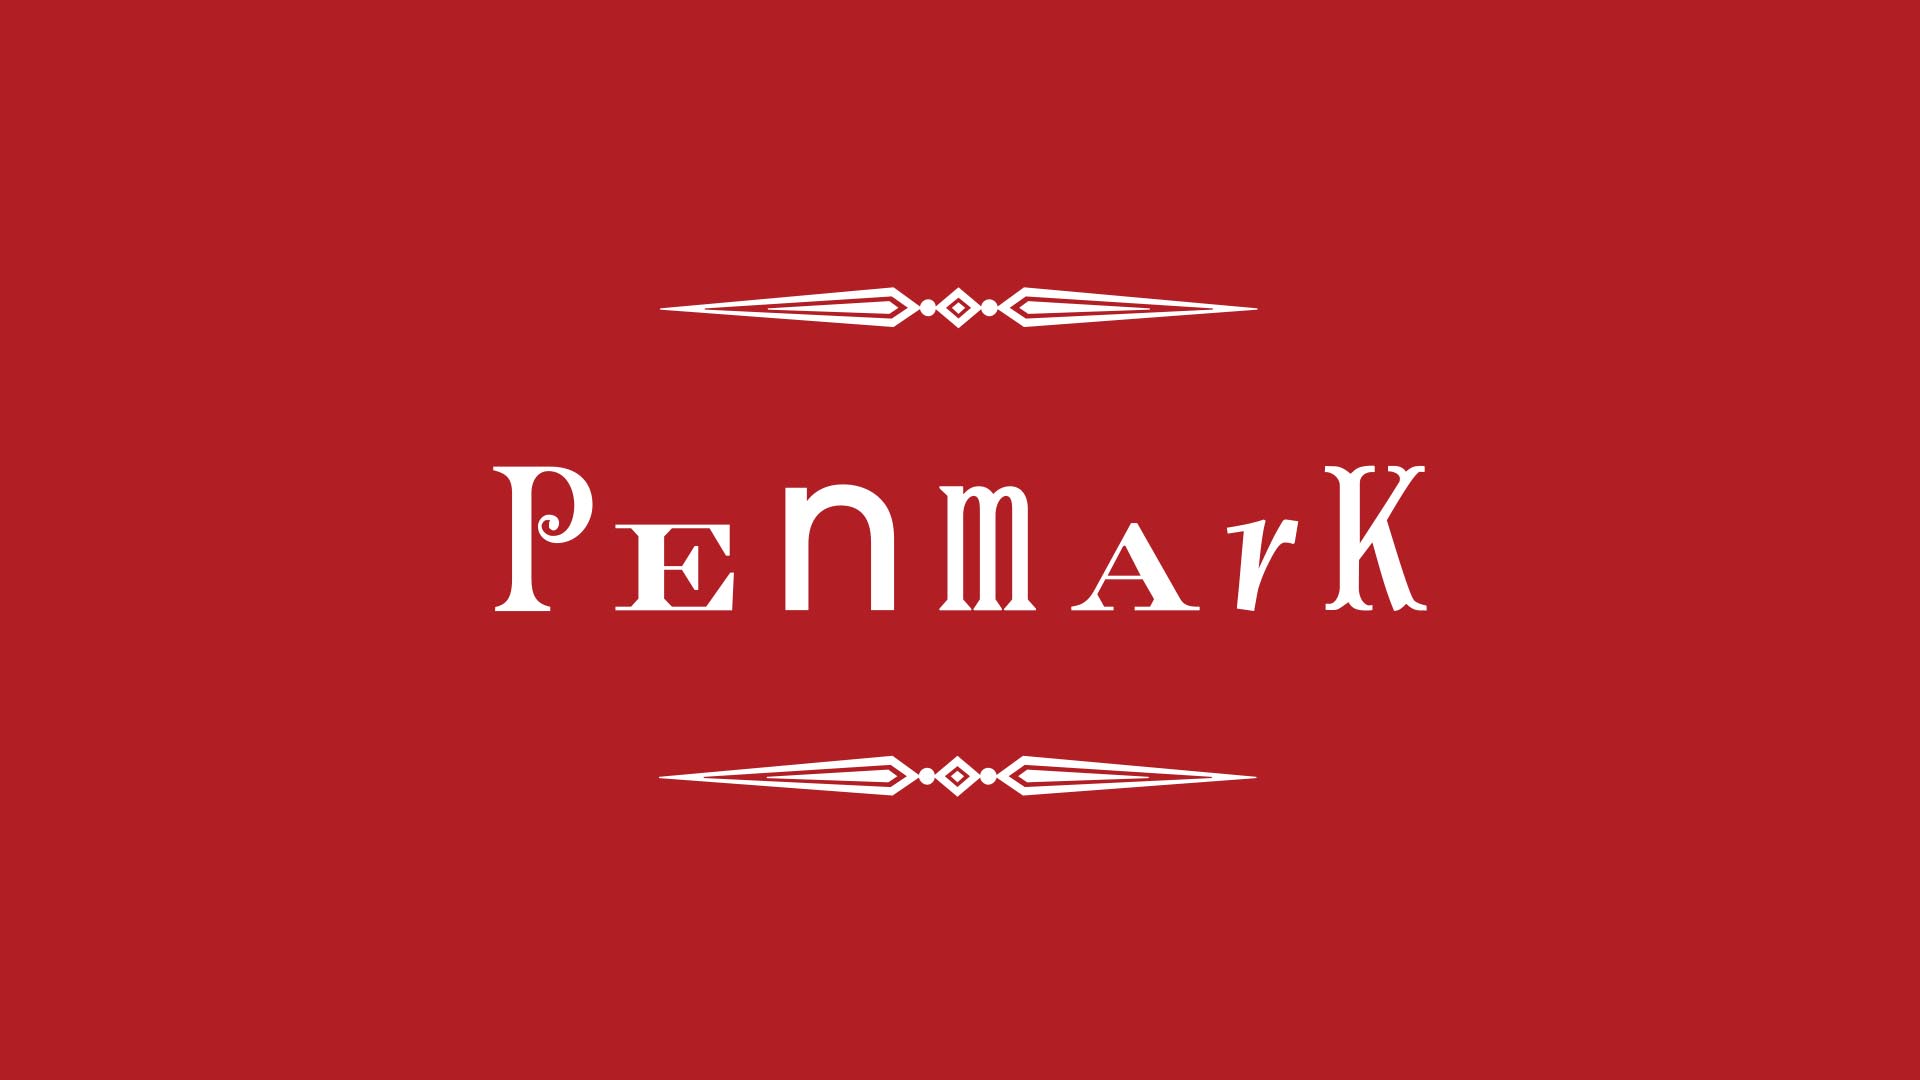 penmark white logo on red